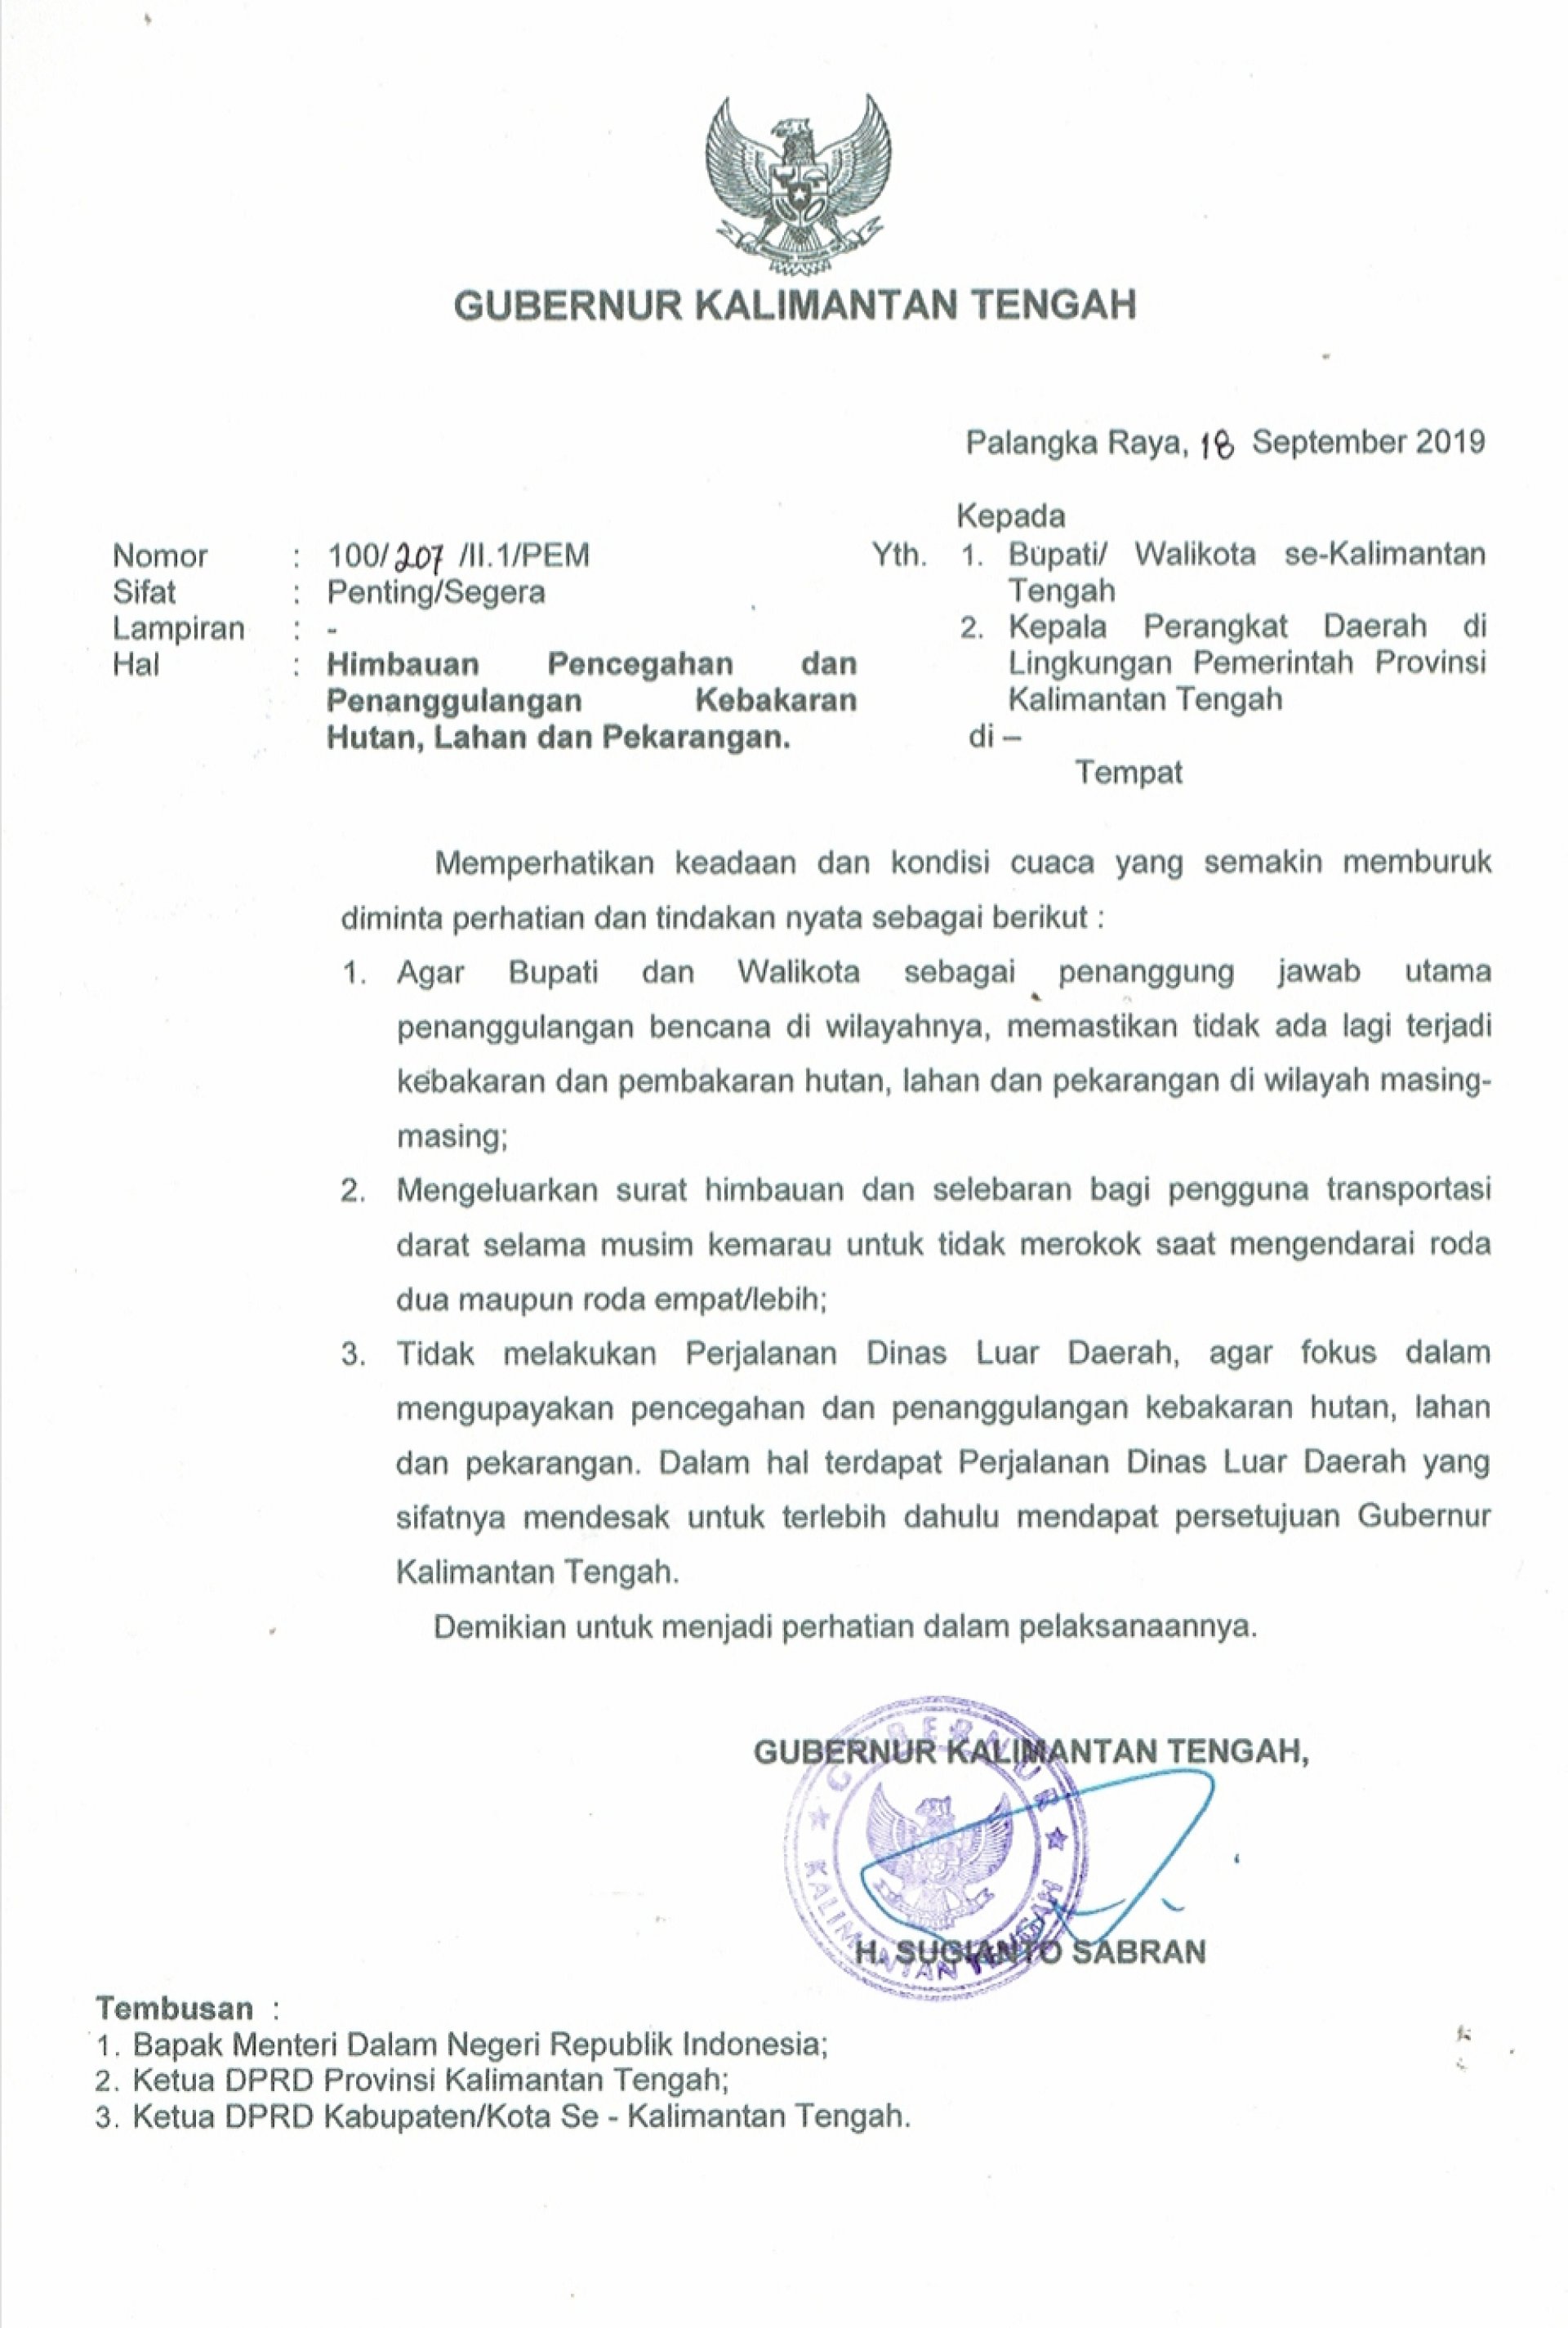 Surat Gubernur Kalimantan Tengah Nomor: 100/207/II.1/PEM Perihal Imbauan Pencegahan dan Penanggulangan Kebakaran Hutan, Lahan, dan Pekarangan